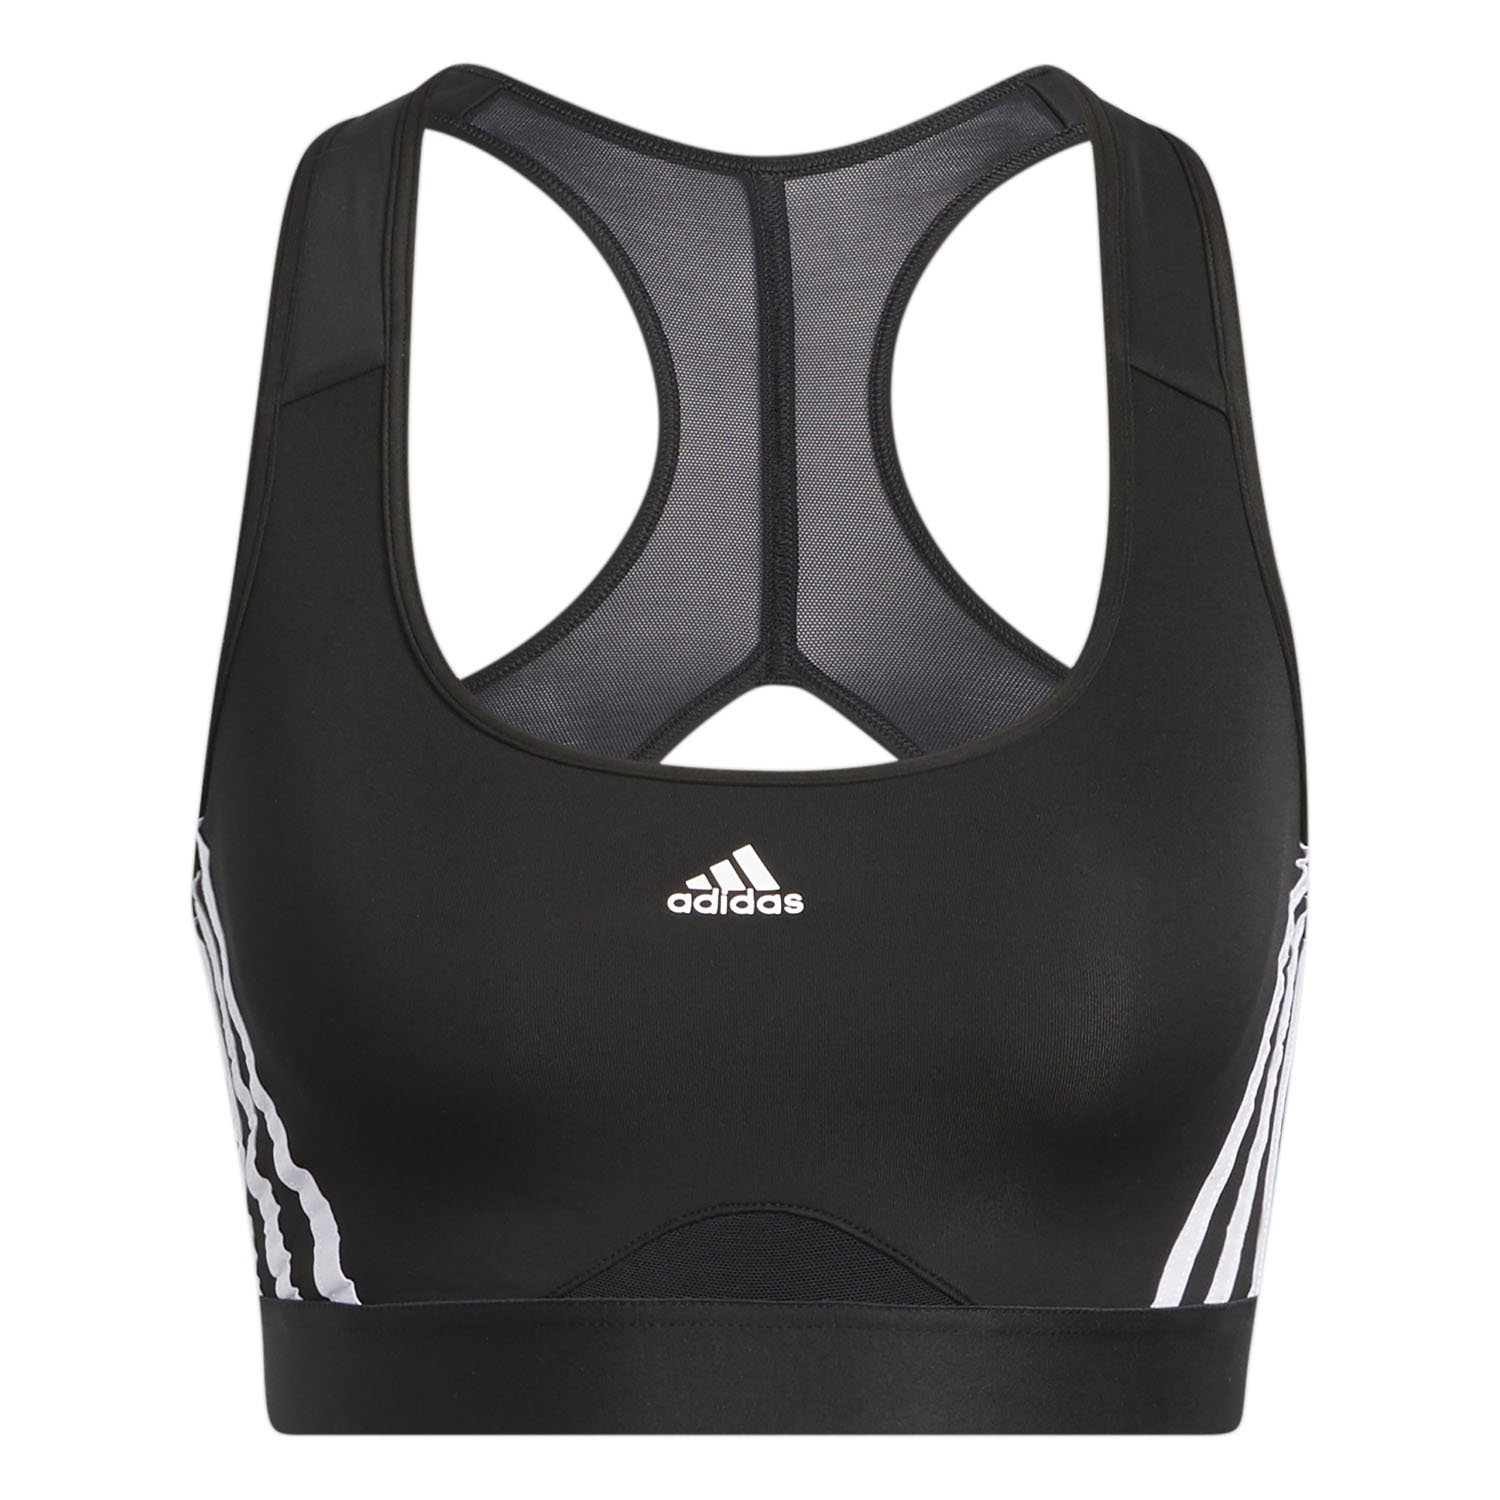 Adidas Powerreact Training 3-Stripes Kadın Fitness Bra - Siyah - 1